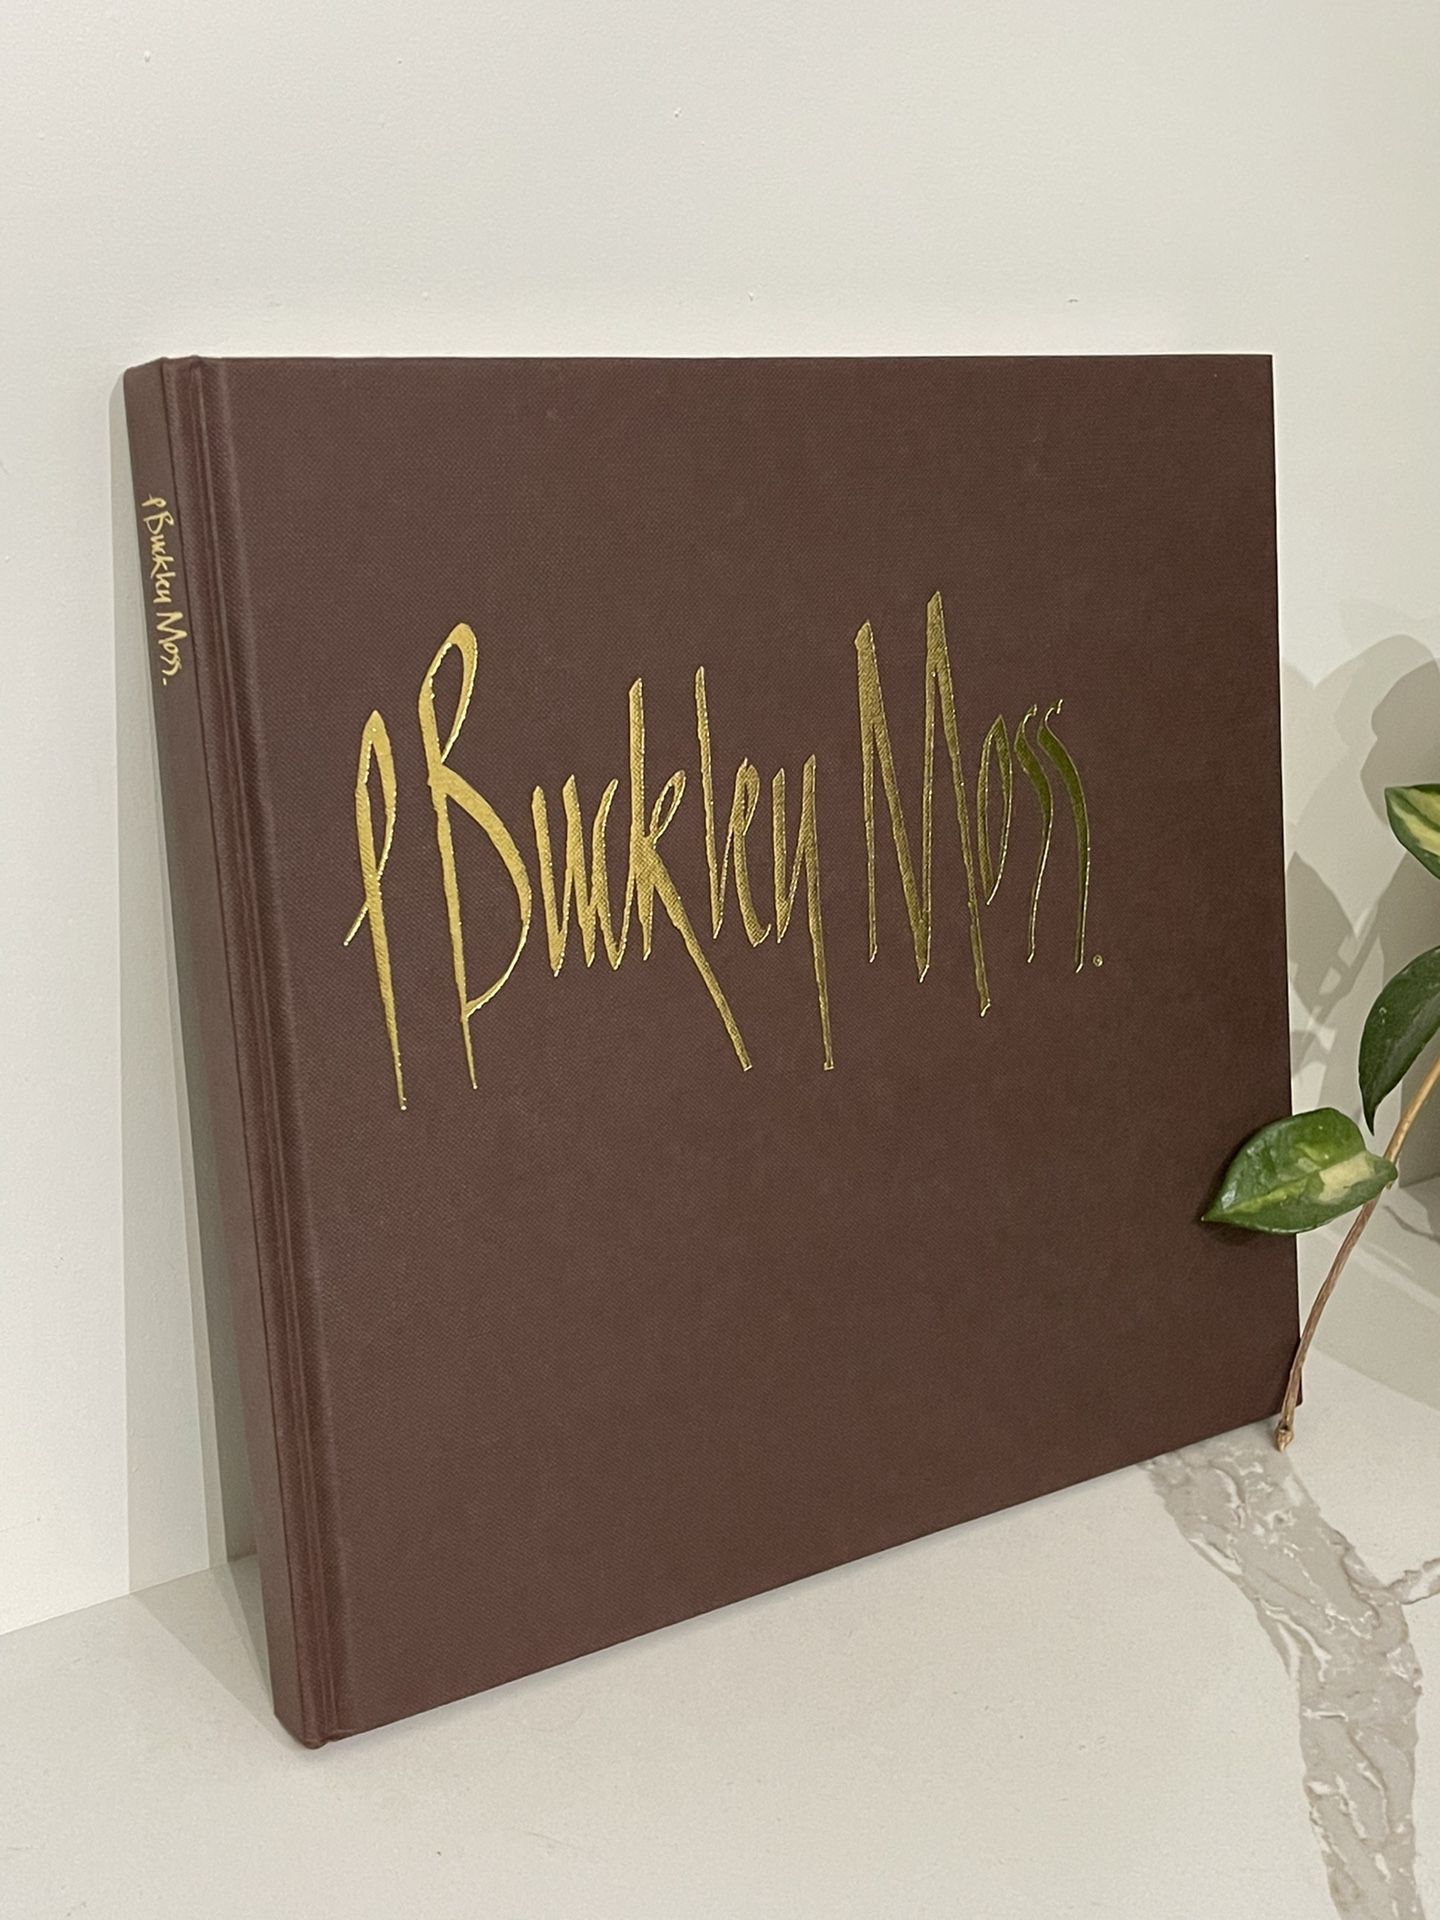 Signed P. Buckley Moss Art Book 